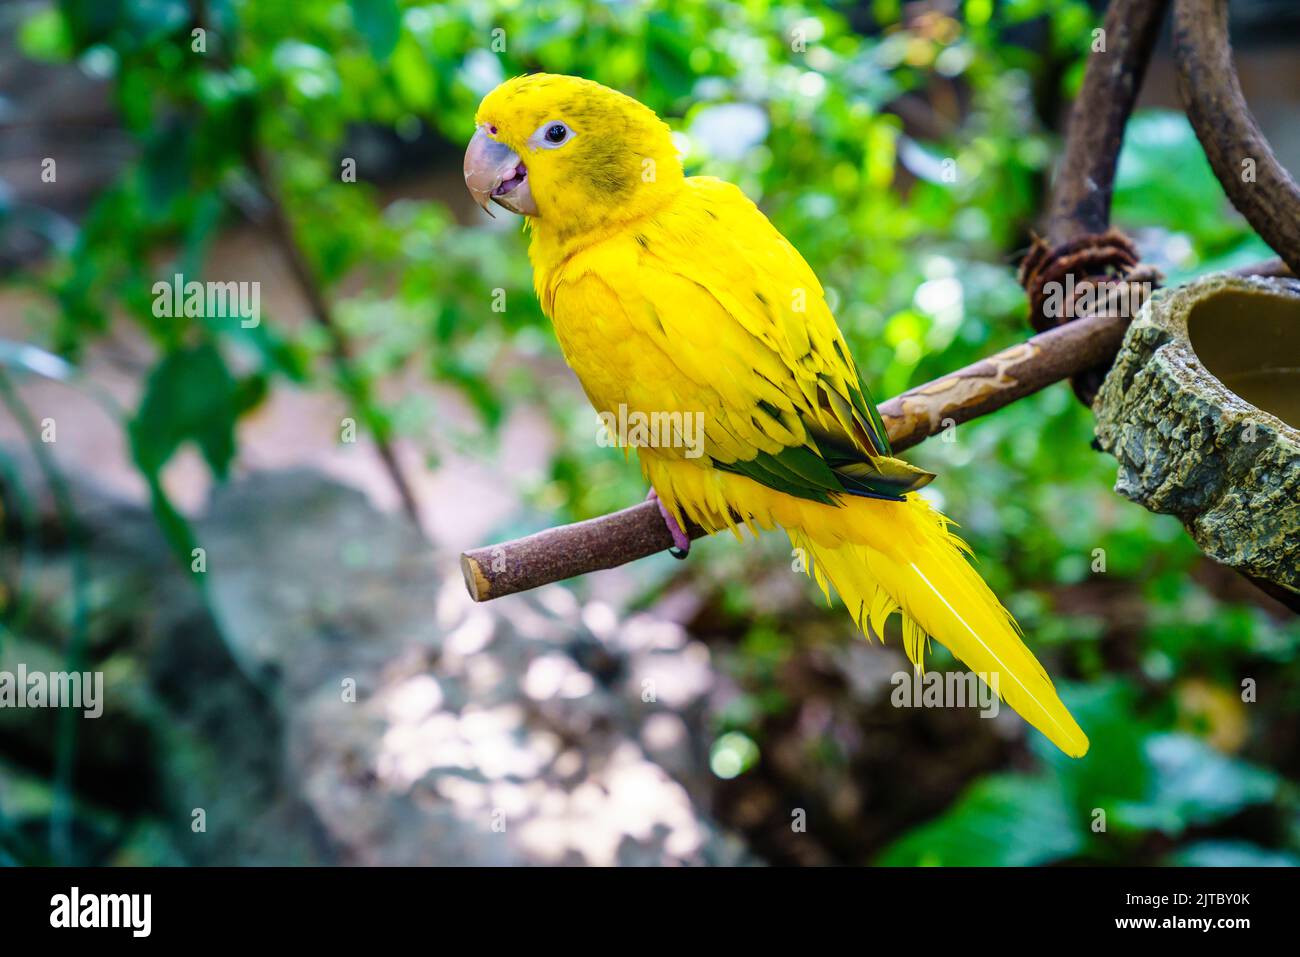 Portrait de perroquet jaune dans un sanctuaire d'oiseaux Banque D'Images